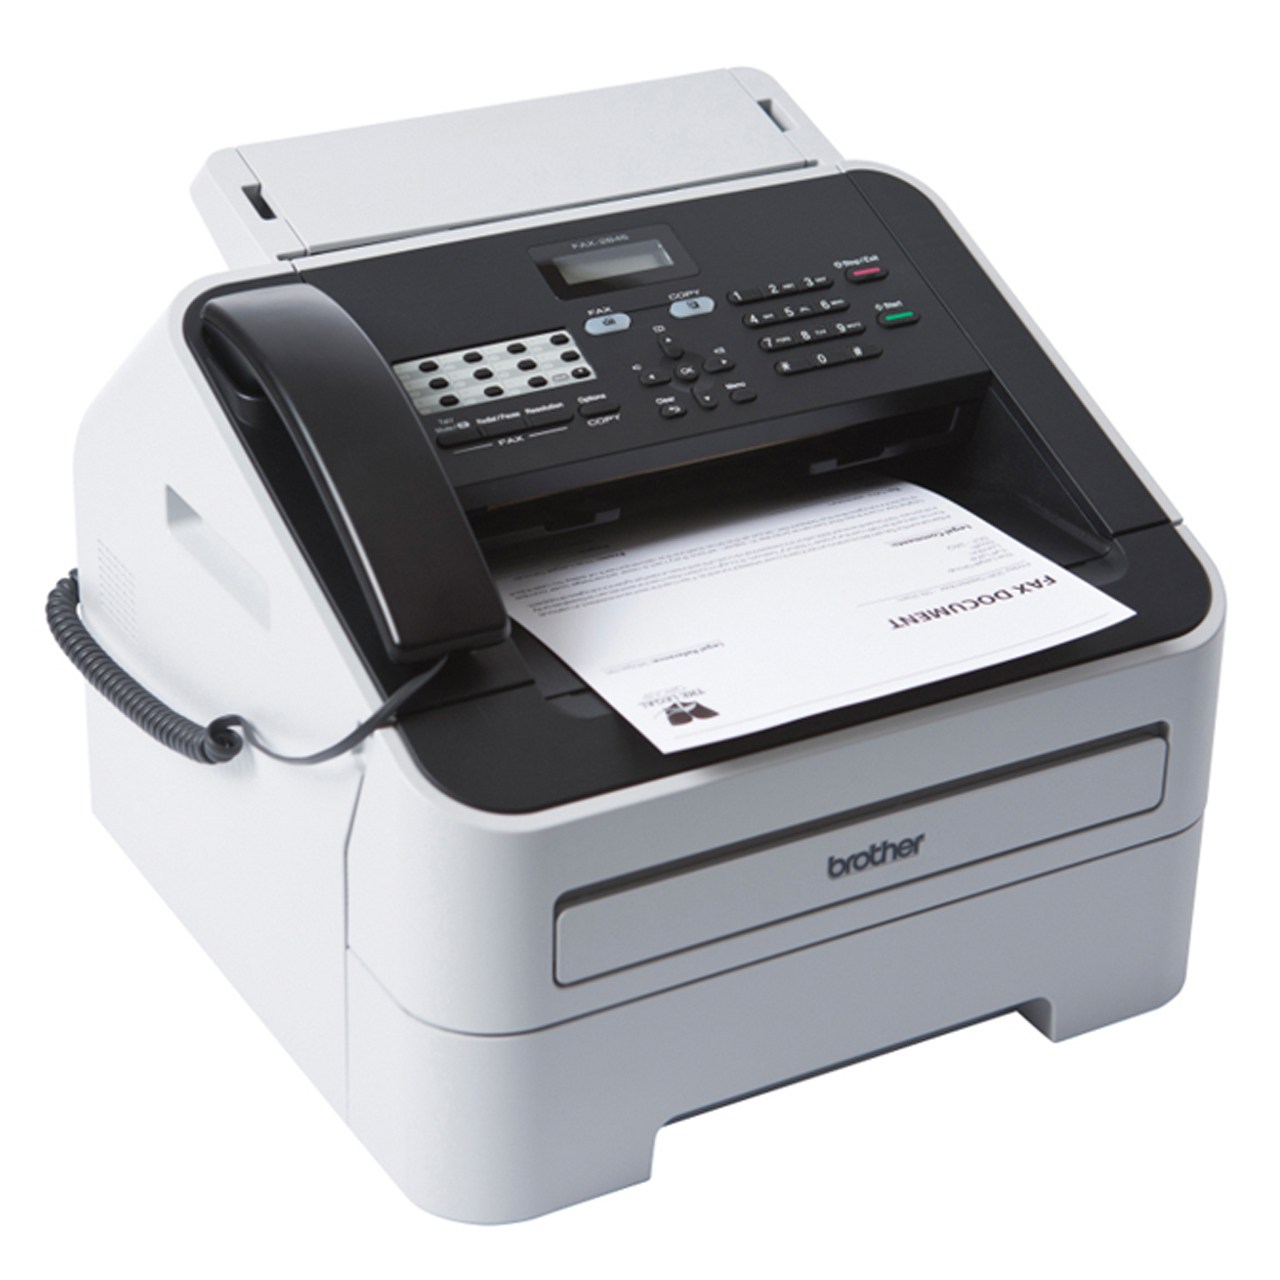 فروش اقساطی فکس برادر مدل Fax-2840